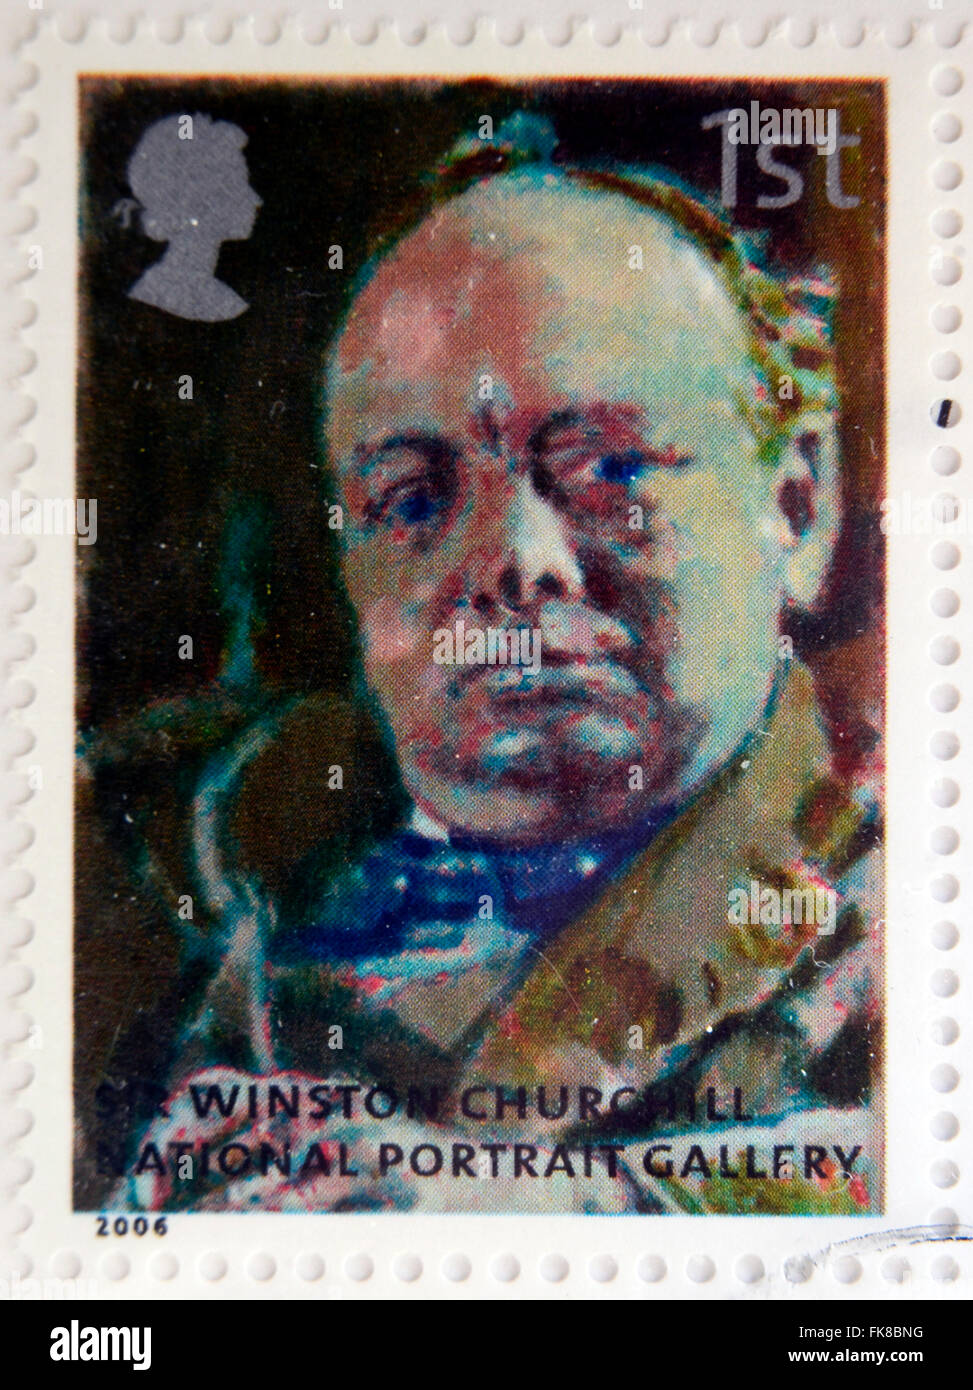 Vereinigtes Königreich - CIRCA 2006: Eine Briefmarke gedruckt in Großbritannien gewidmet der national Portrait Gallery zeigt Winston Churchill Stockfoto